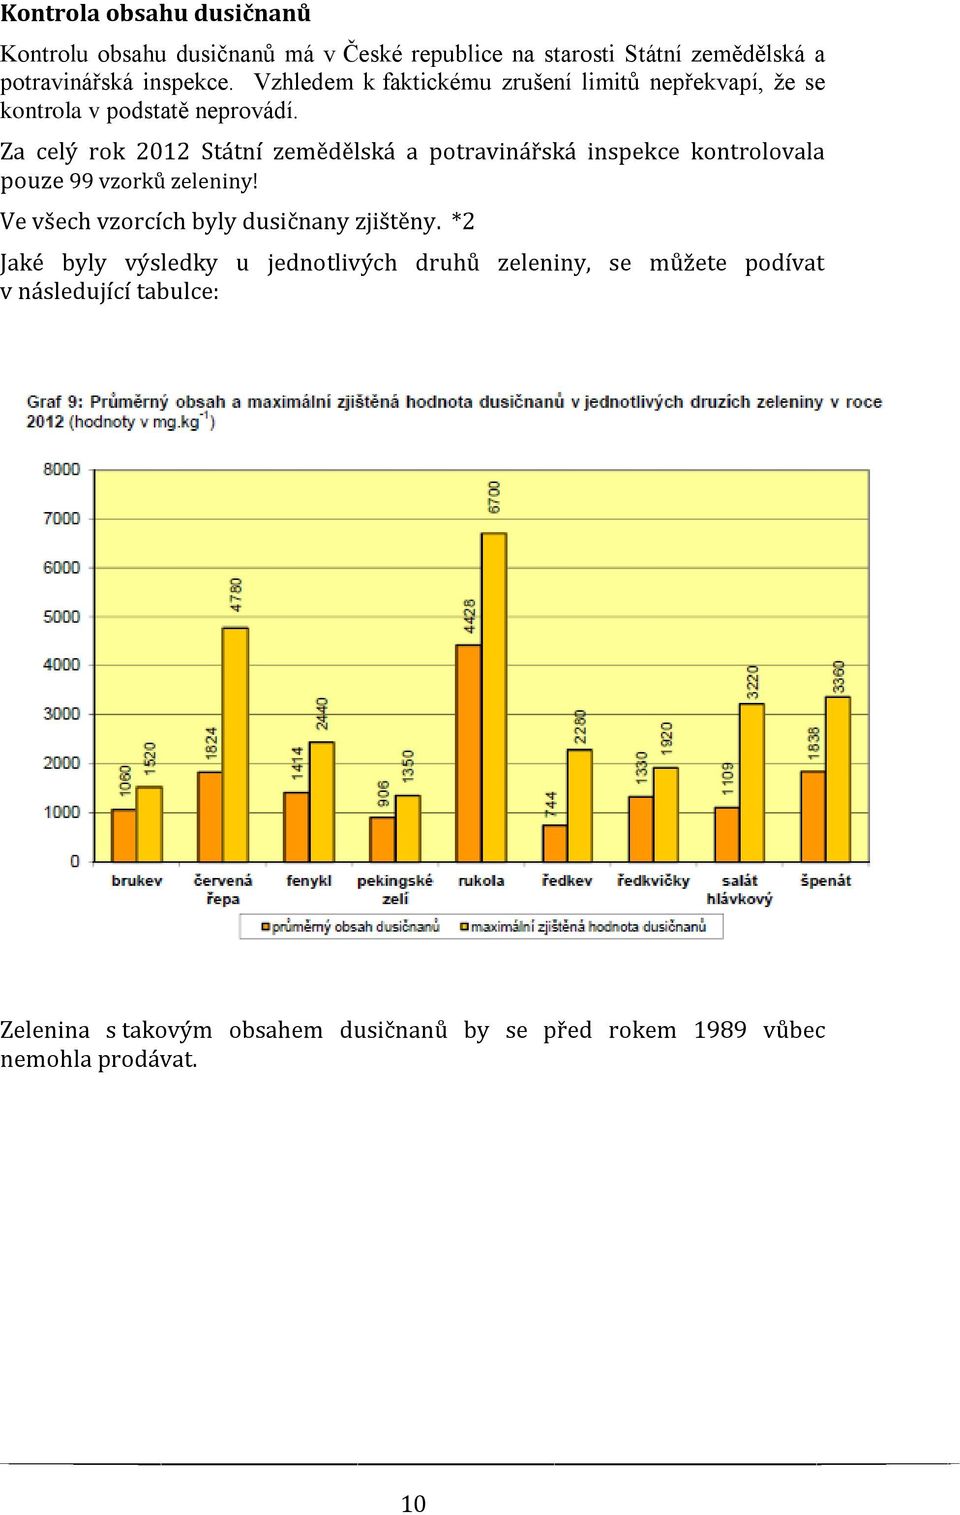 Za celý rok 2012 Státní zemědělská a potravinářská inspekce kontrolovala pouze 99 vzorků zeleniny!